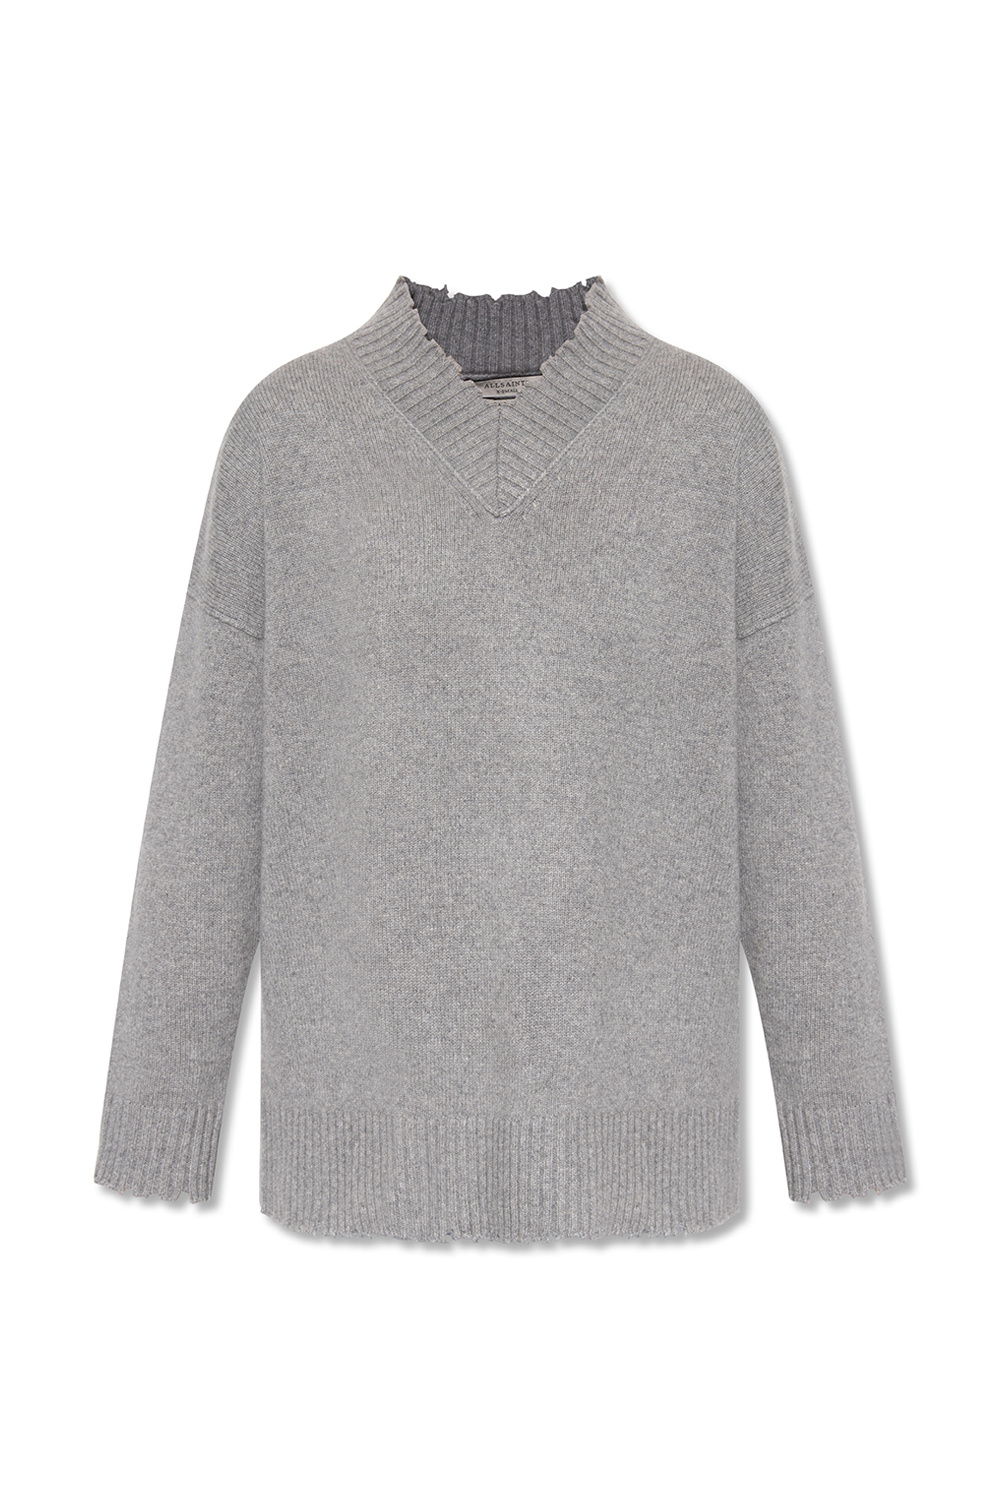 AllSaints ‘Jax’ cashmere sweater